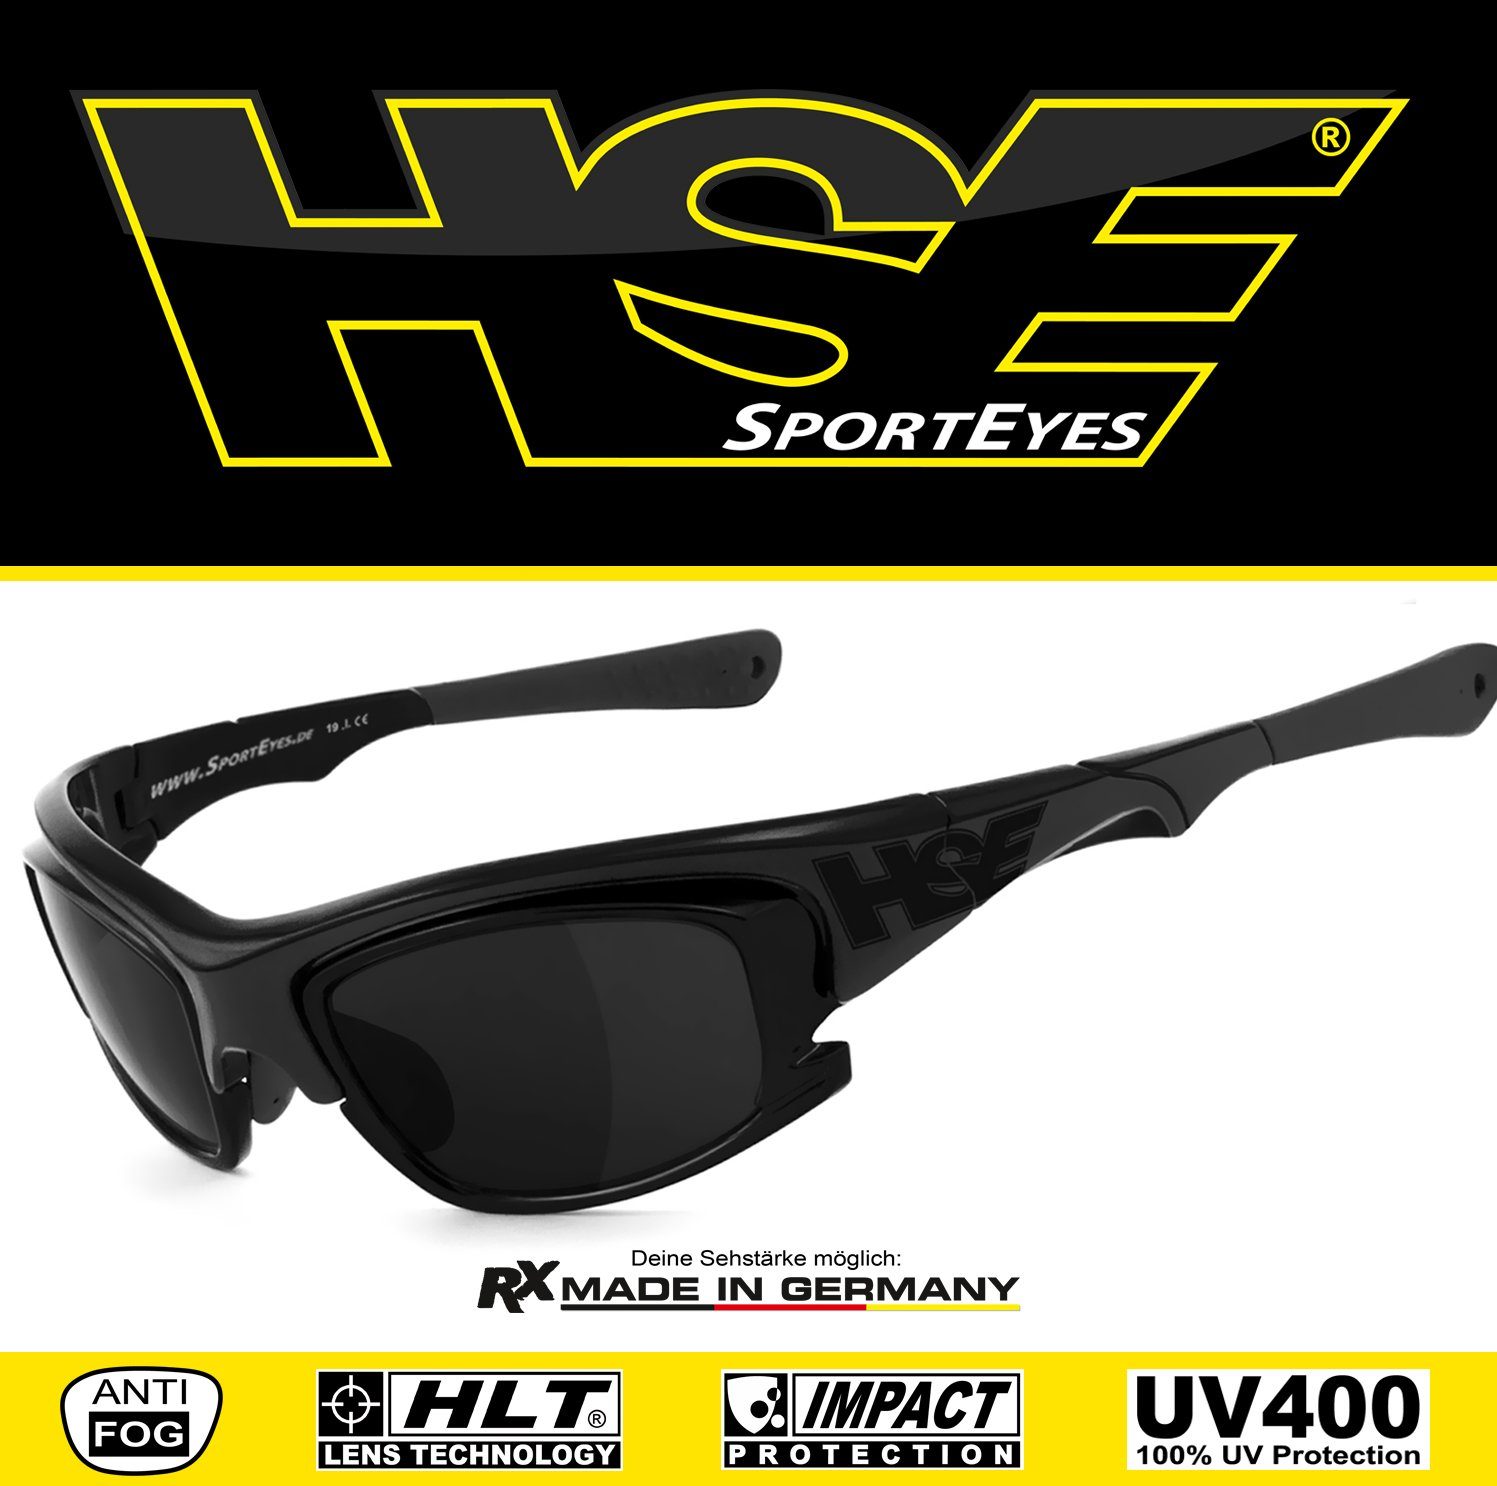 2015, SportEyes Sportbrille HSE - Kunststoff-Sicherheitsglas durch Steinschlagbeständig